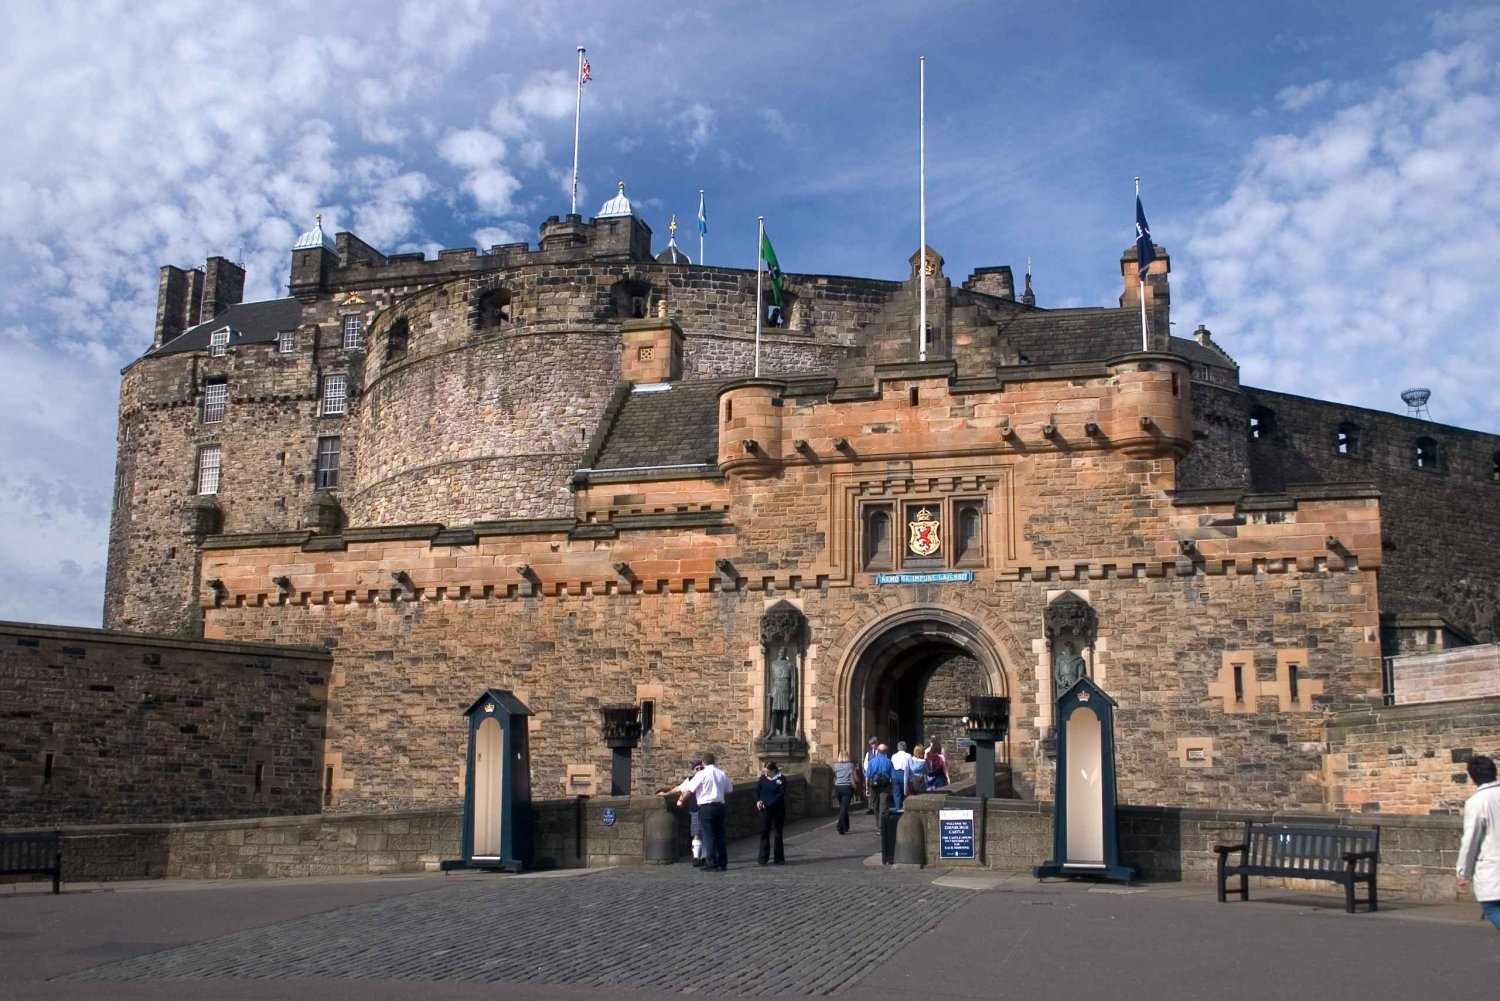 Castelo de Edimburgo: Visita guiada a pé com ingresso de entrada